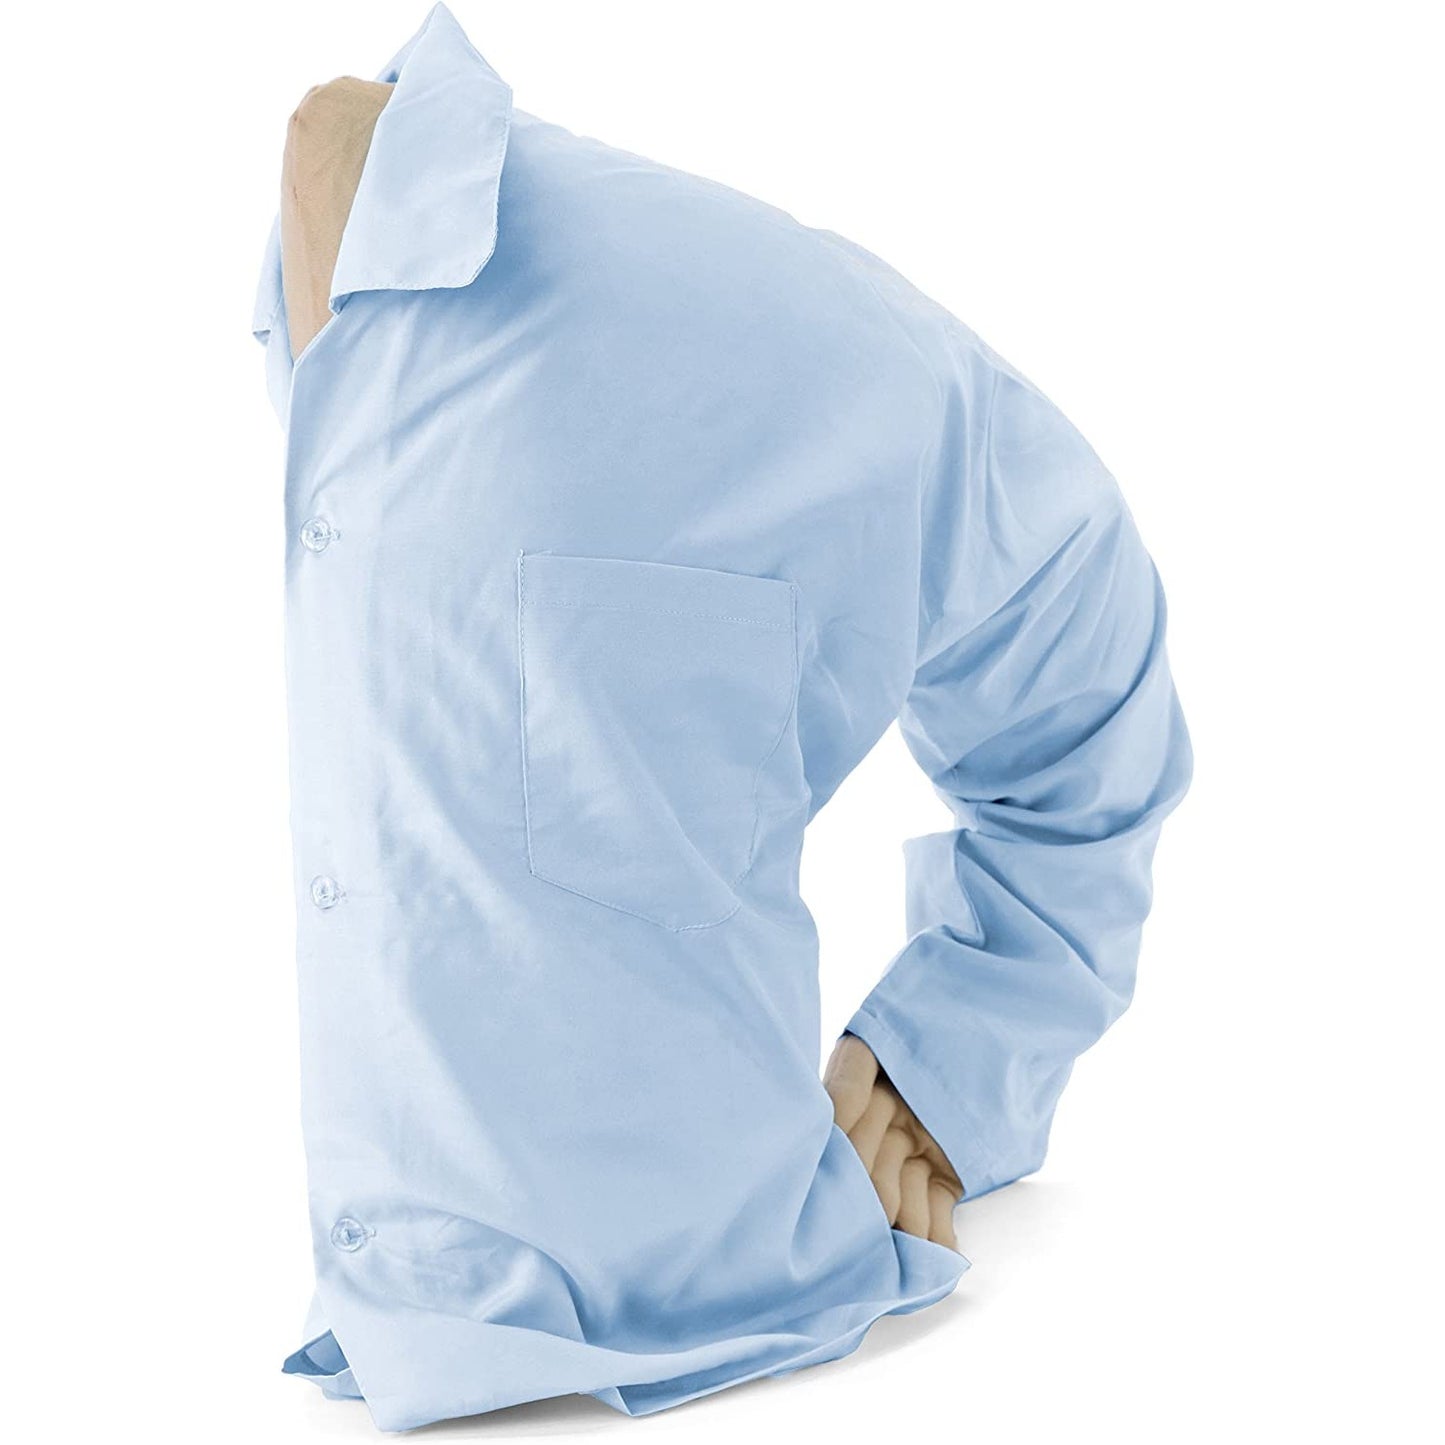 A boyfriend pillow wearing a blue shirt.